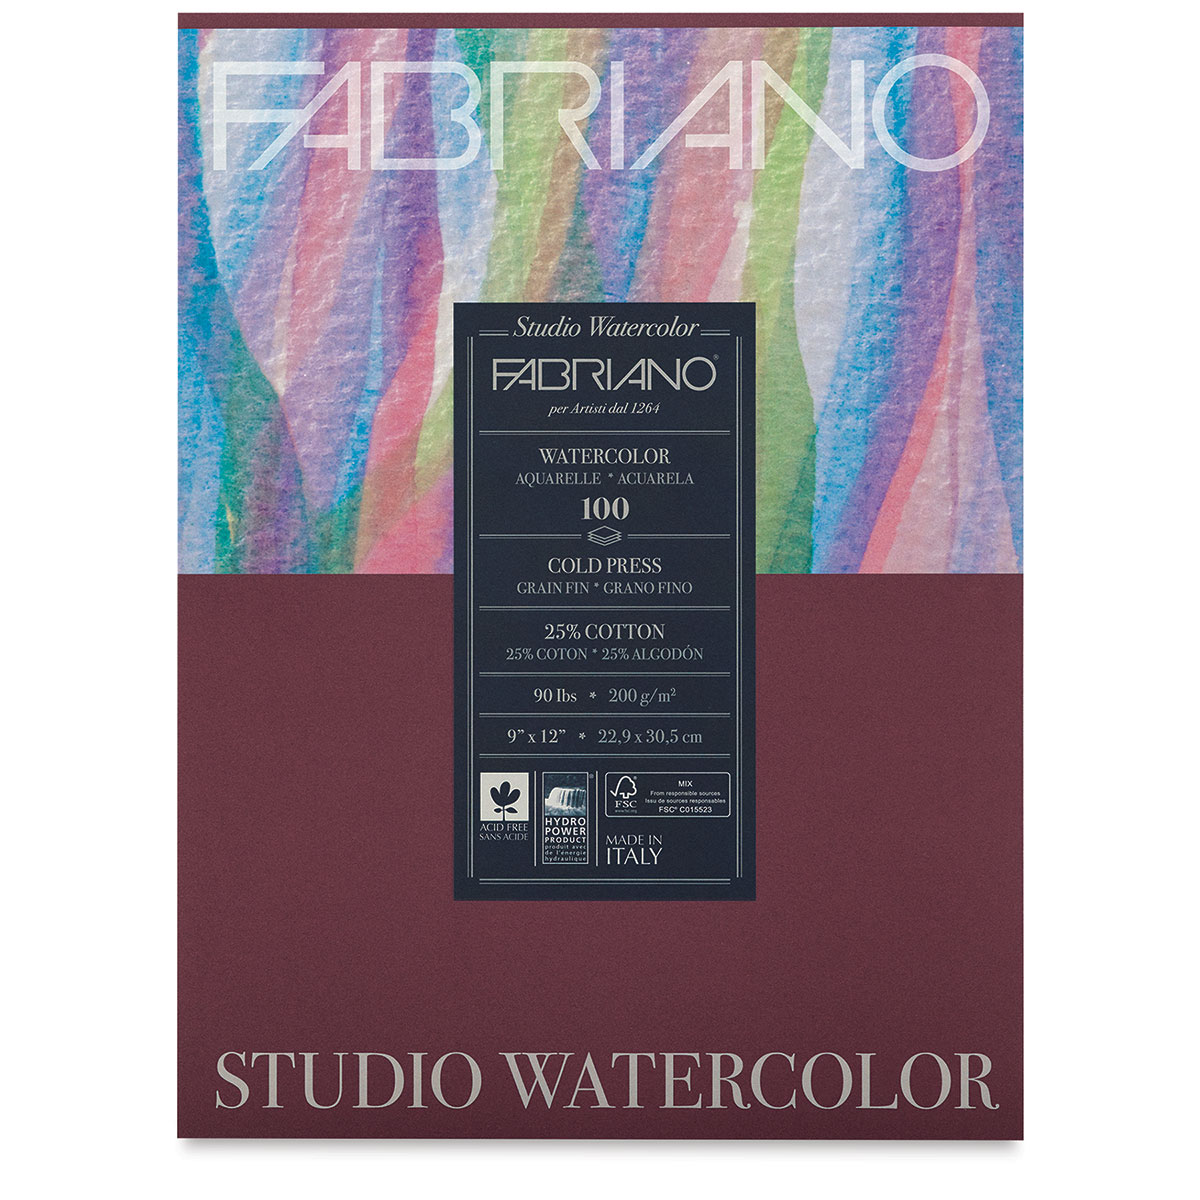 Fabriano Studio Watercolor Paper, 90 lb. (200gsm), 9'' x 12